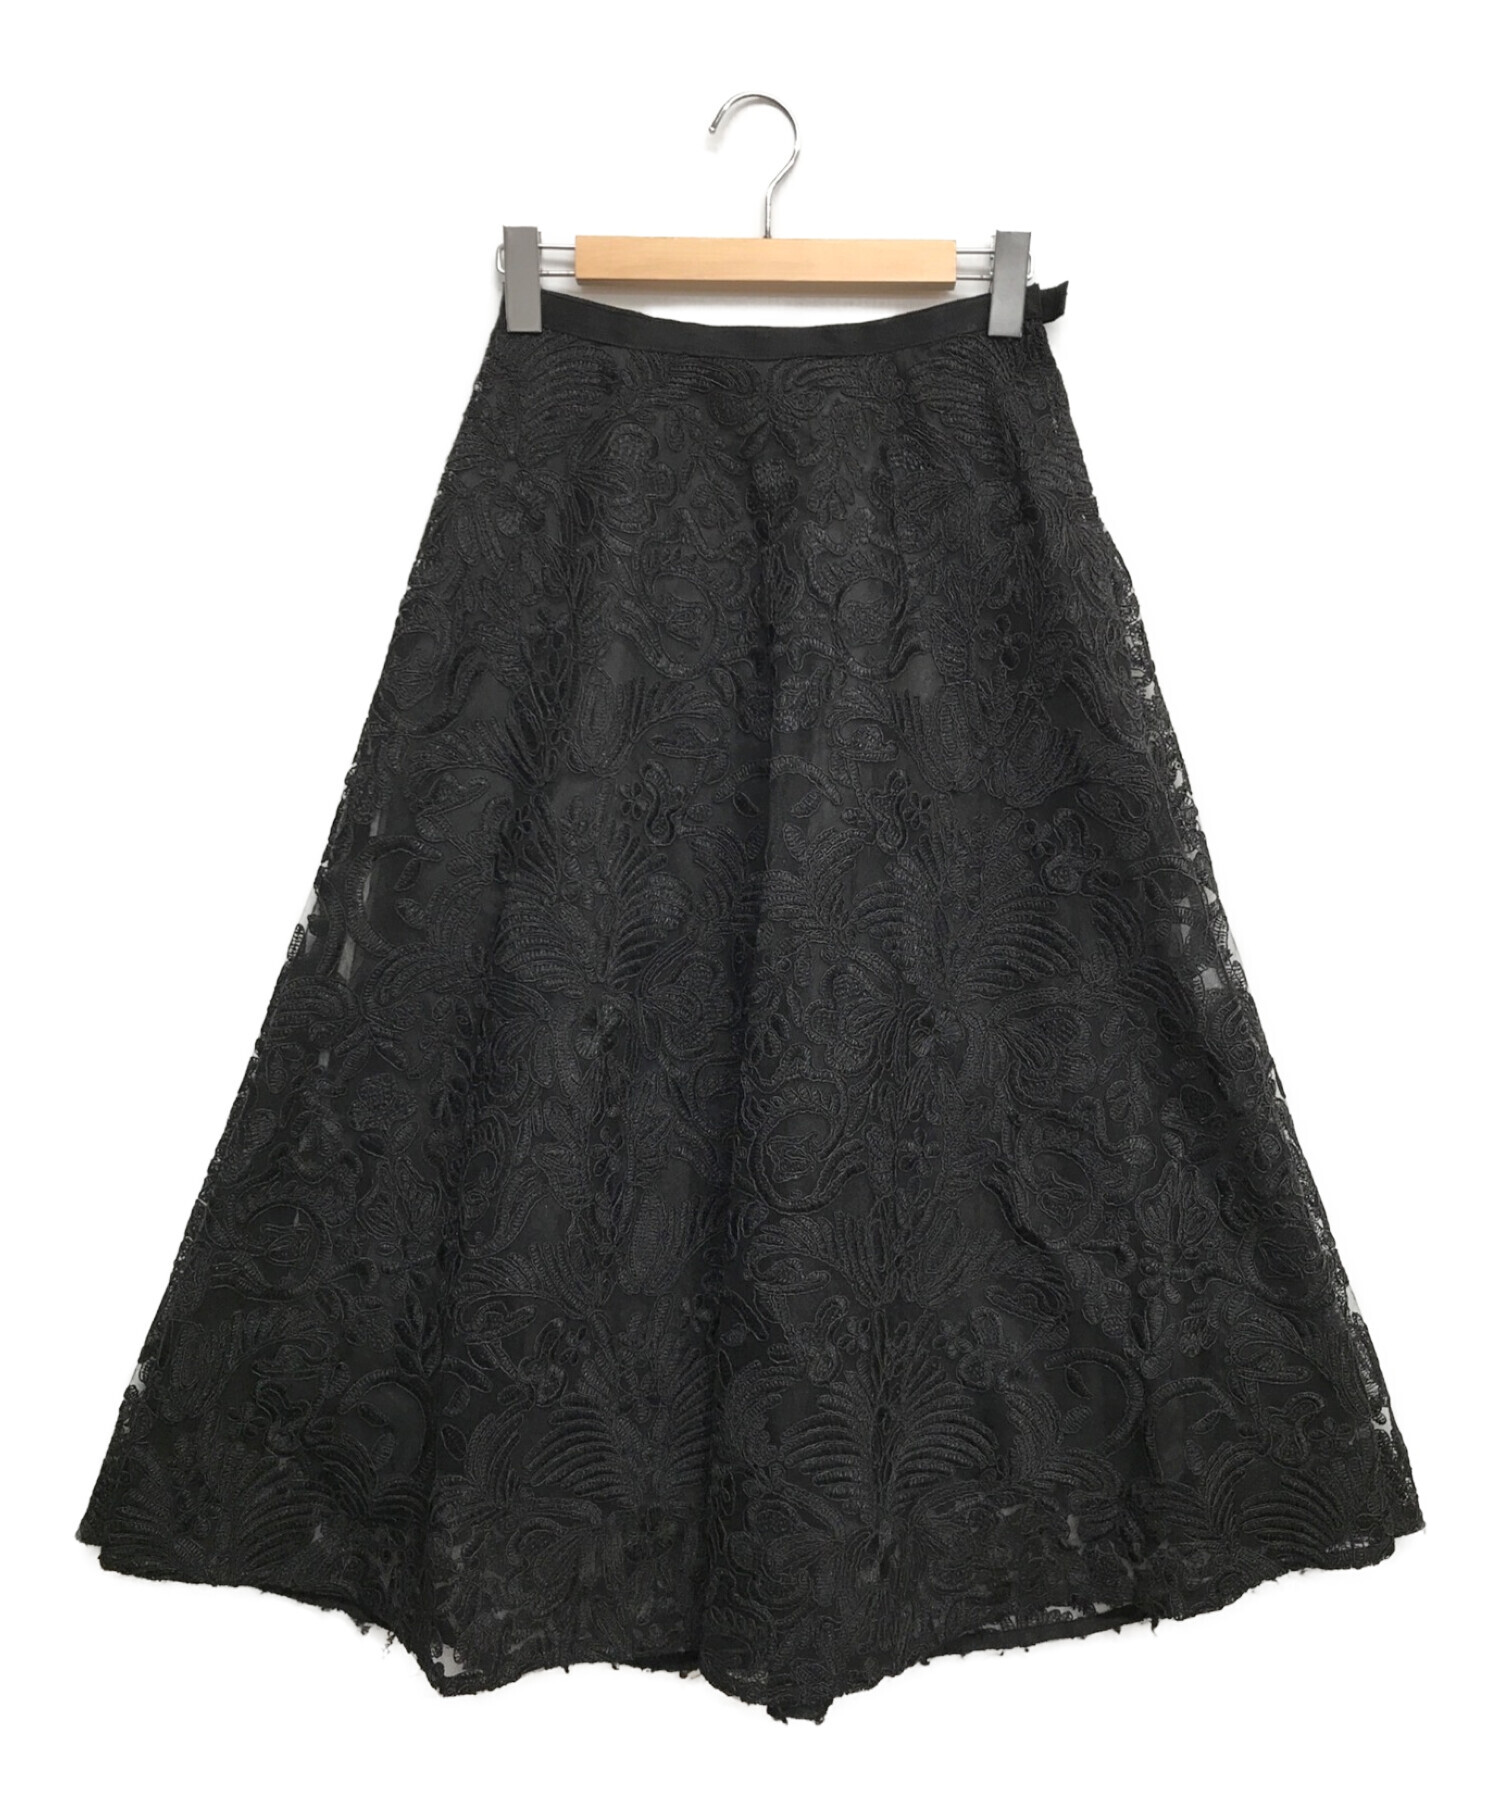 CELFORD (セルフォード) コード刺繍レースフレアスカート ブラック サイズ:36